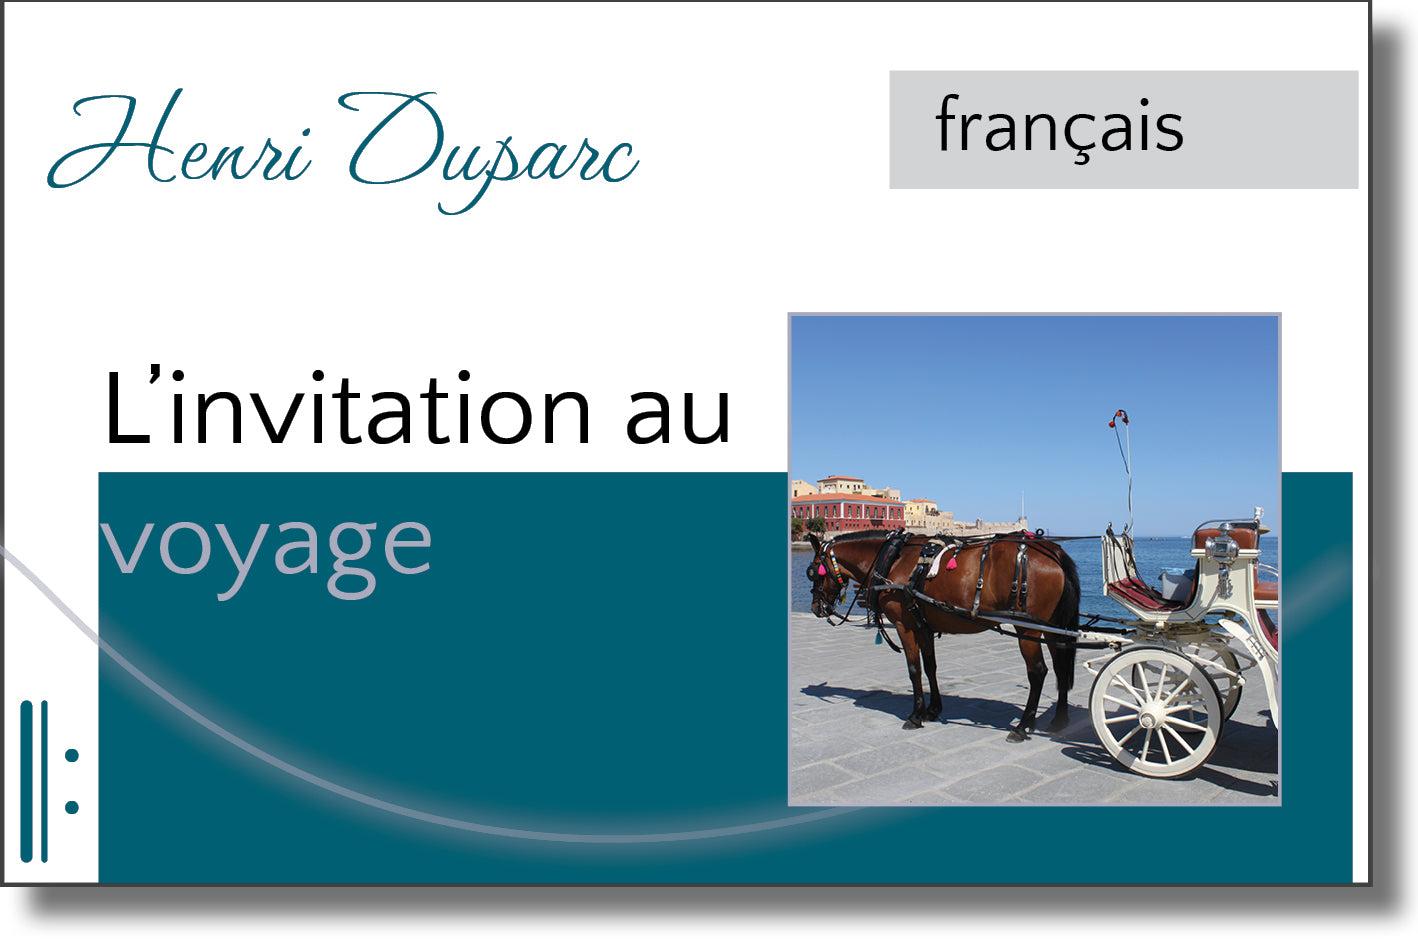 Duparc - L'invitation au voyage